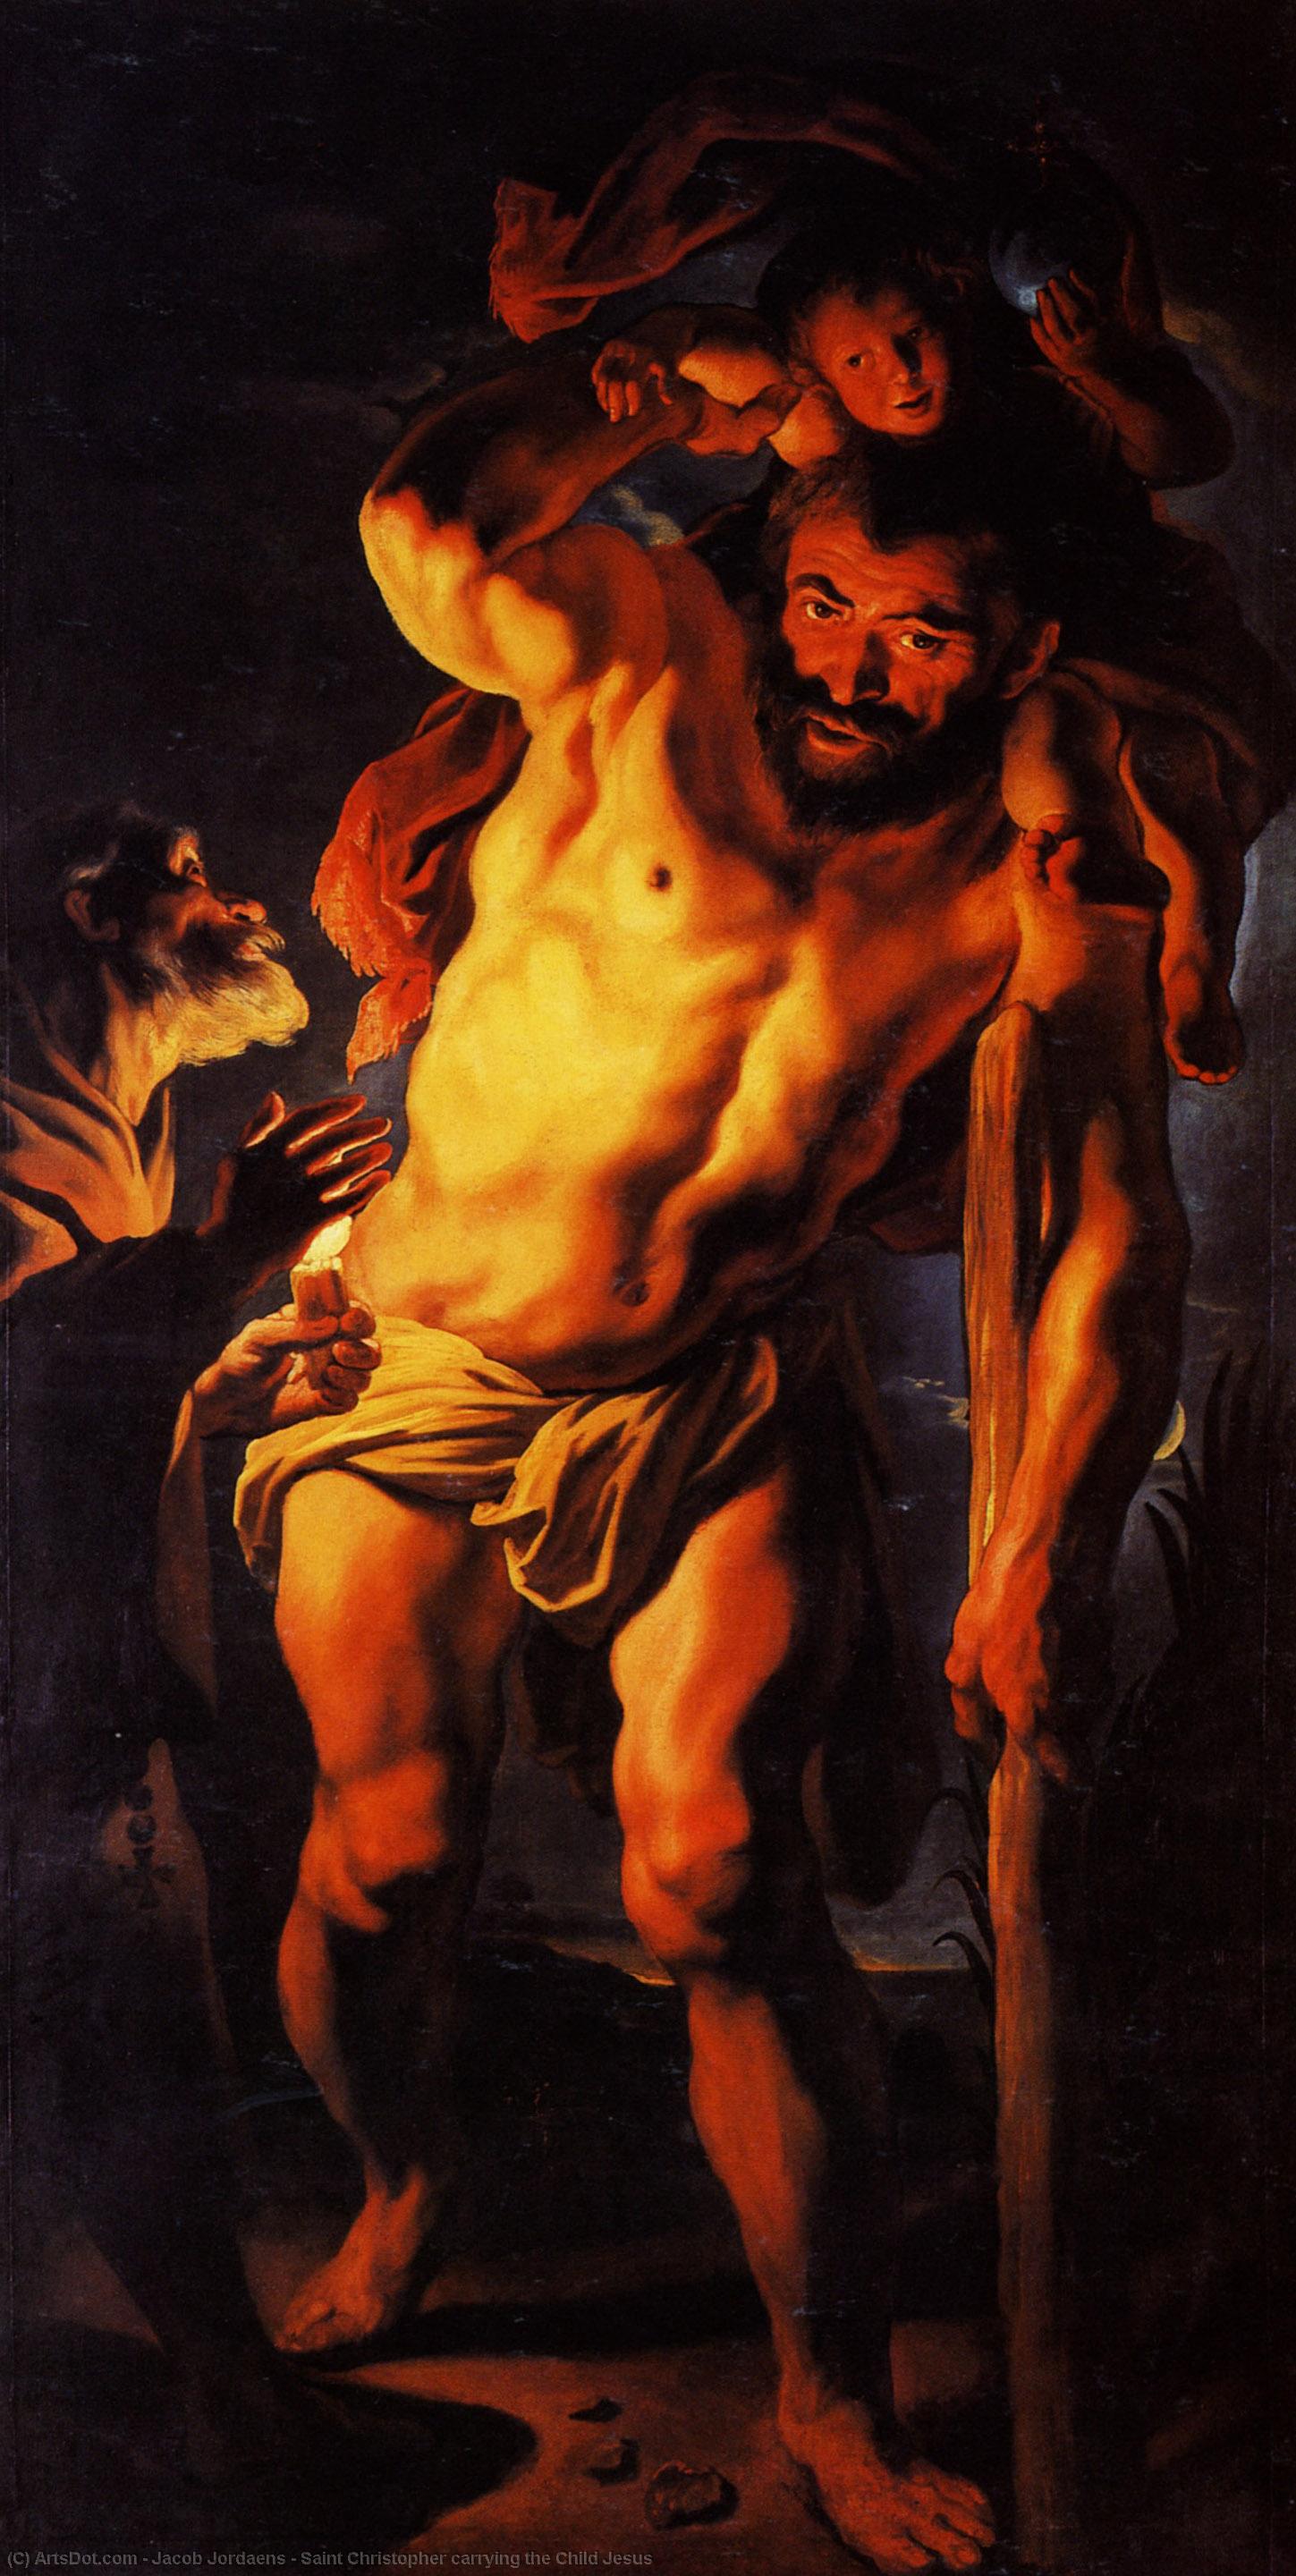 WikiOO.org - Enciclopédia das Belas Artes - Pintura, Arte por Jacob Jordaens - Saint Christopher carrying the Child Jesus